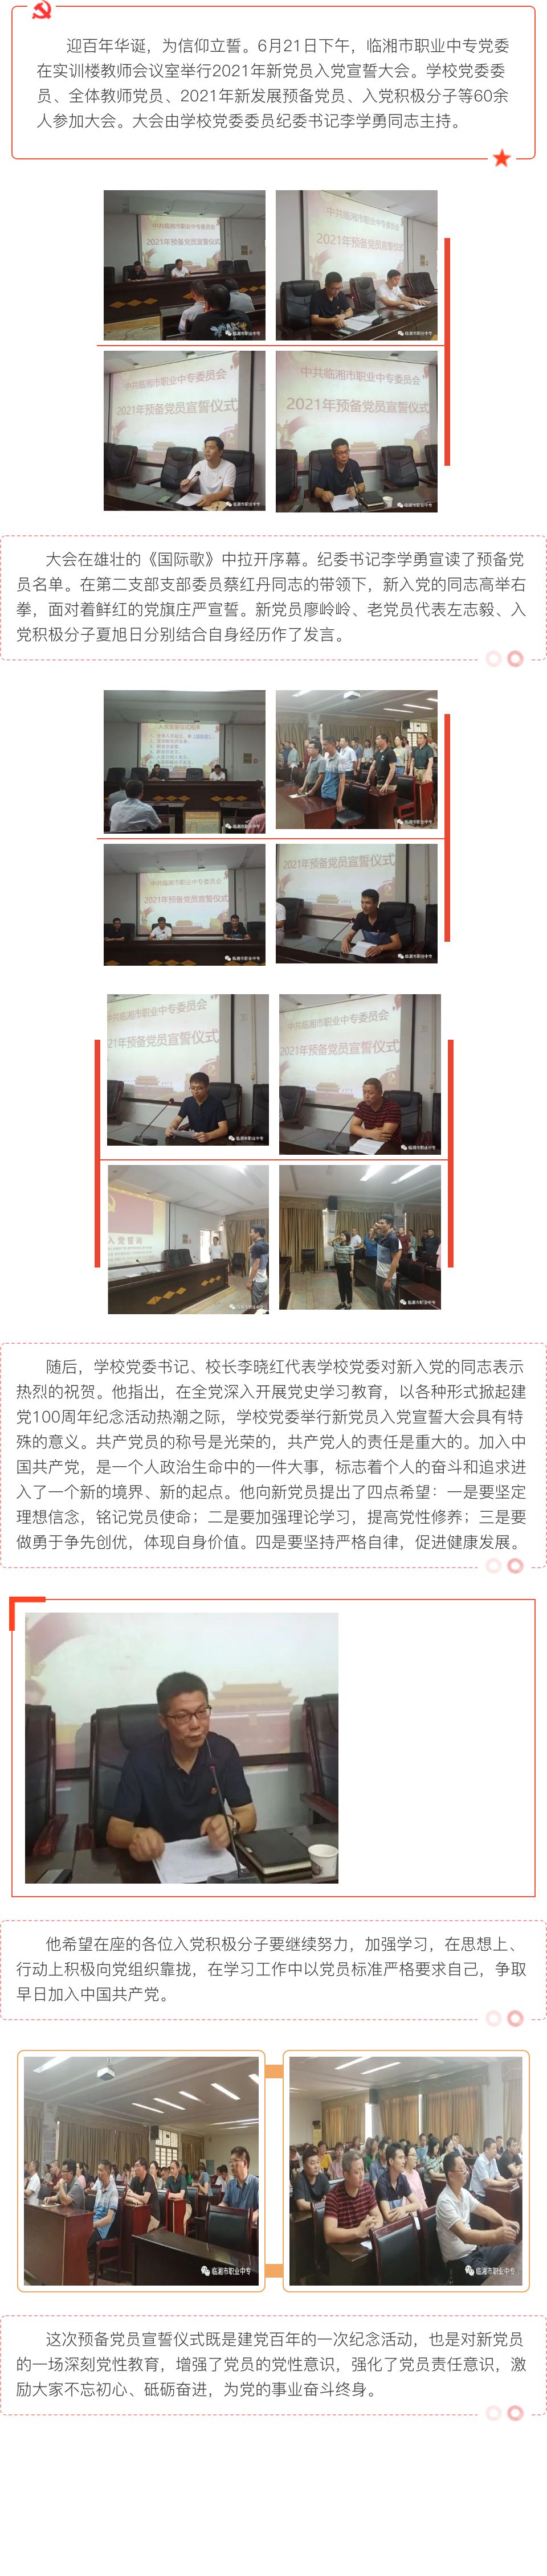 临湘市职业中专举行2021年预备党员入党宣誓仪式